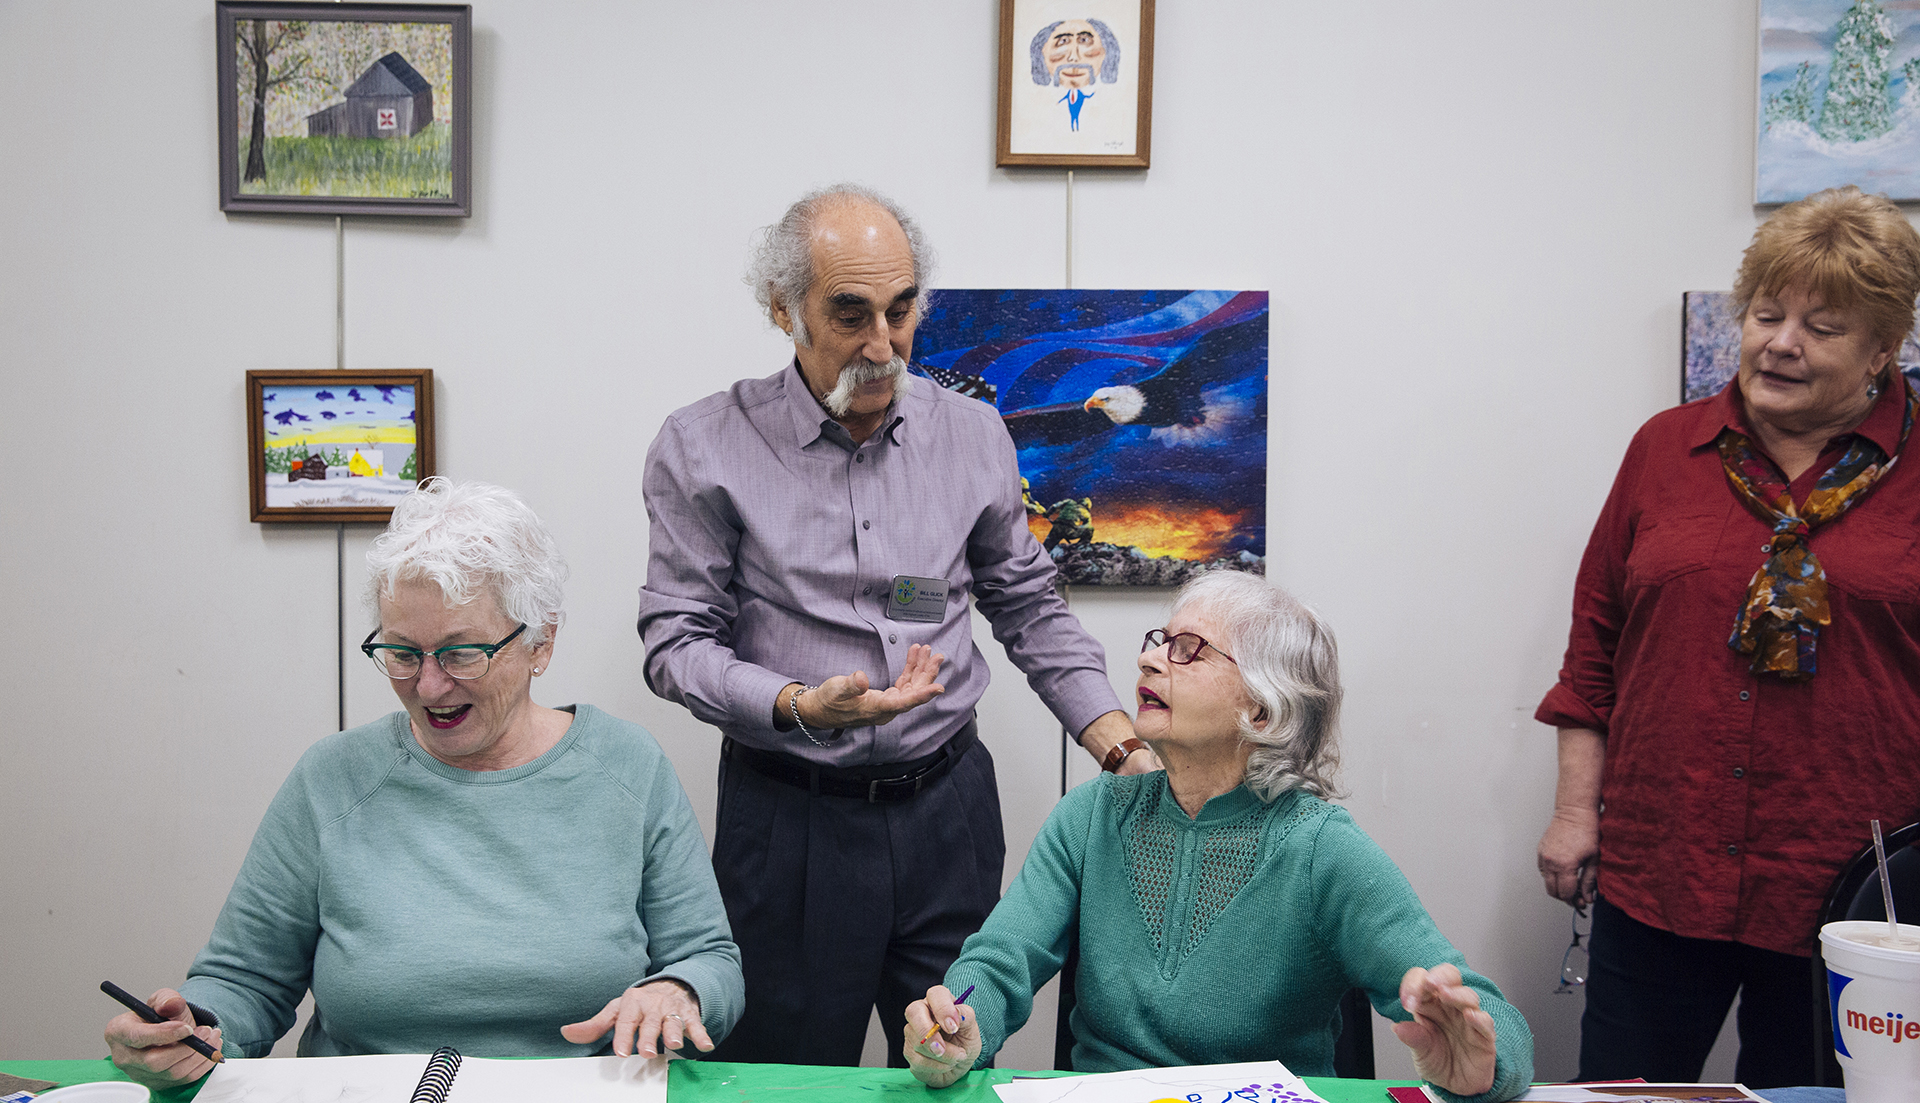 A man speaks with three women at an art class